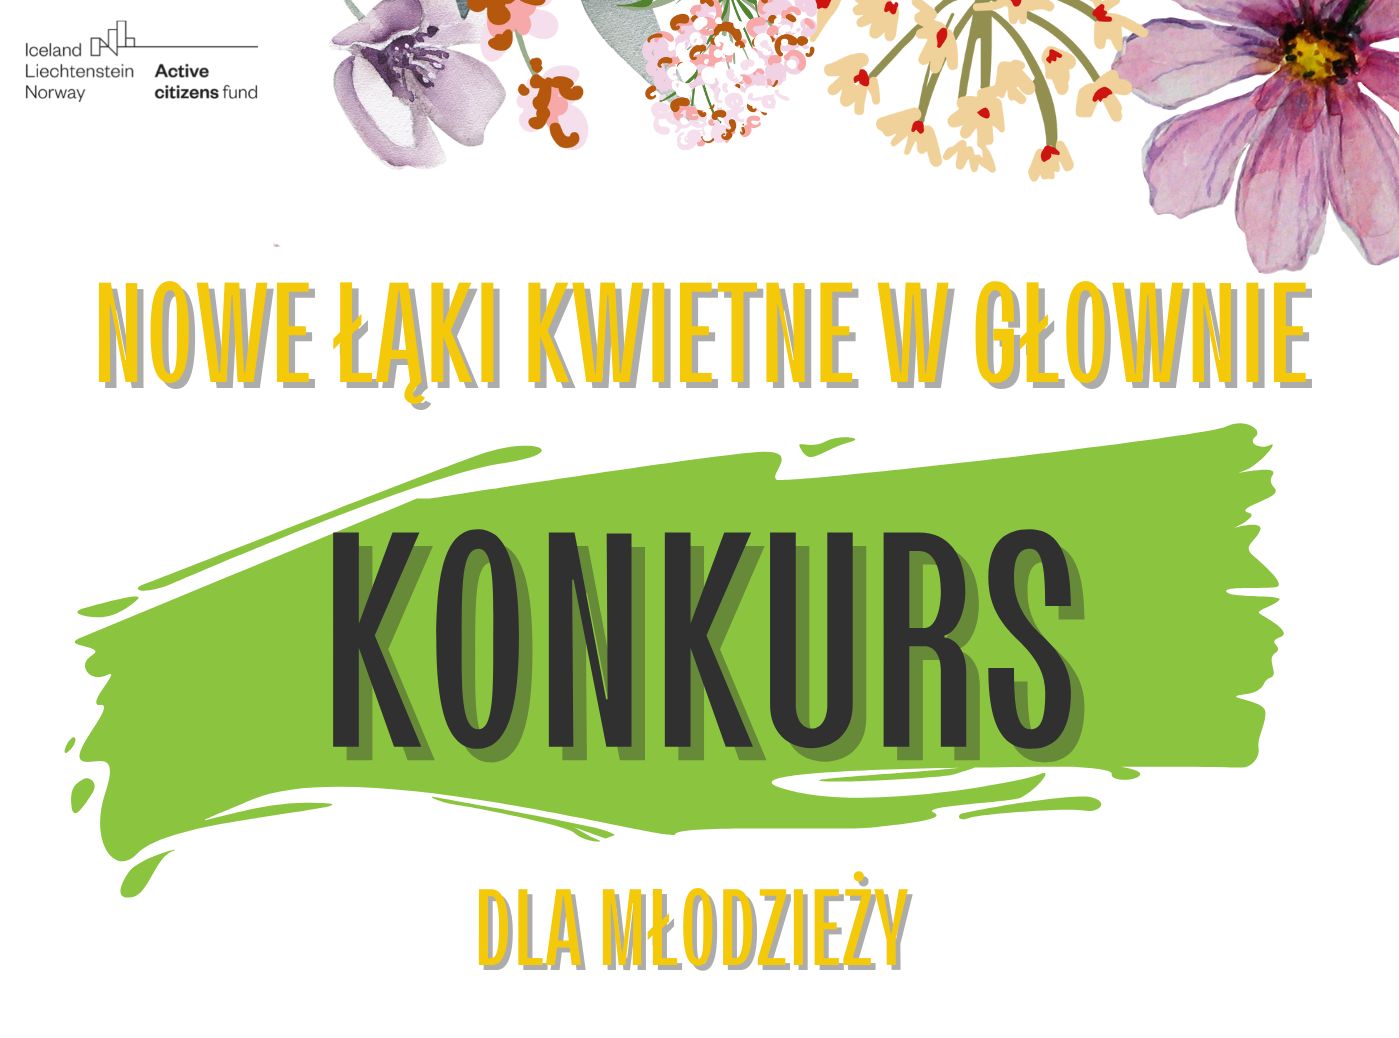 Nowe łąki kwietne w Głownie – Konkurs dla młodzieży